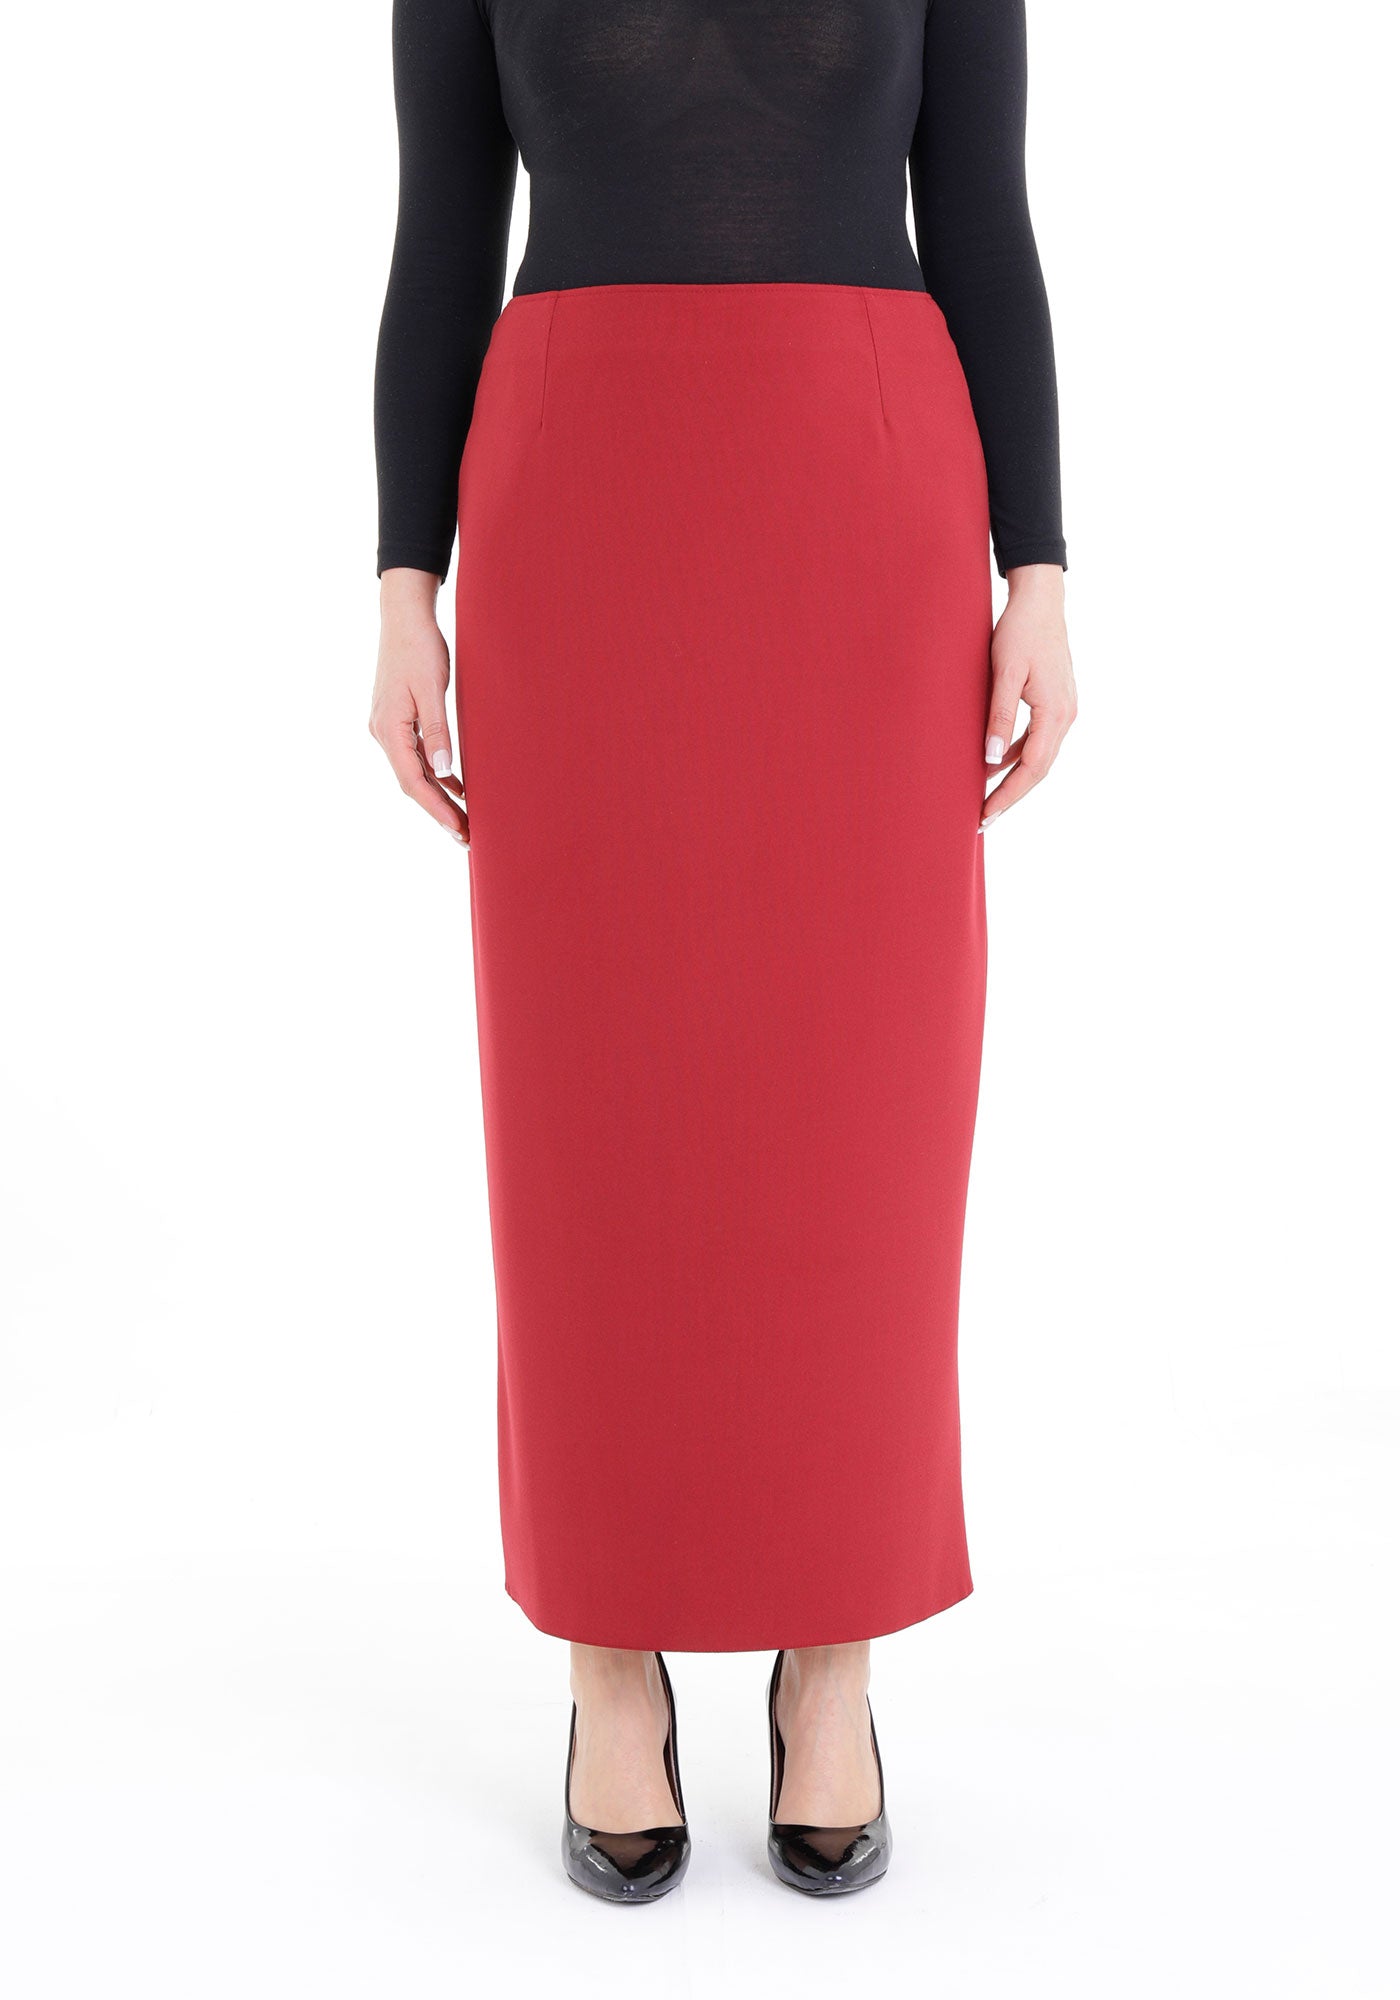 Women's Oversized Burgundy Maxi Pencil Skirt G-Line